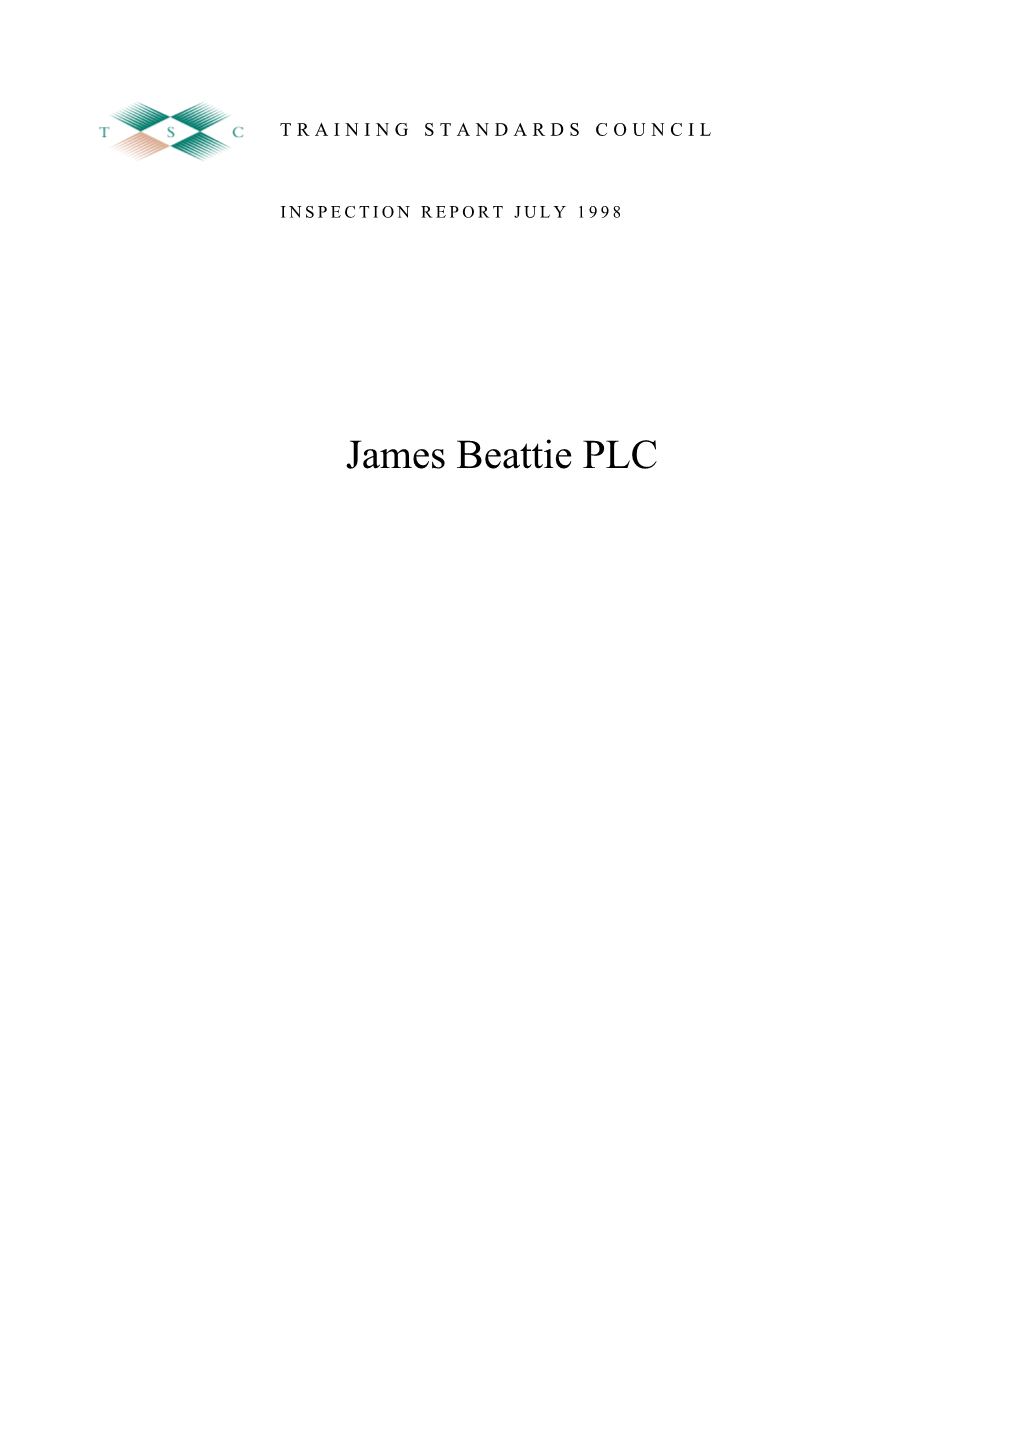 James Beattie PLC INSPECTION REPORT: JAMES BEATTIE PLC JULY 1998